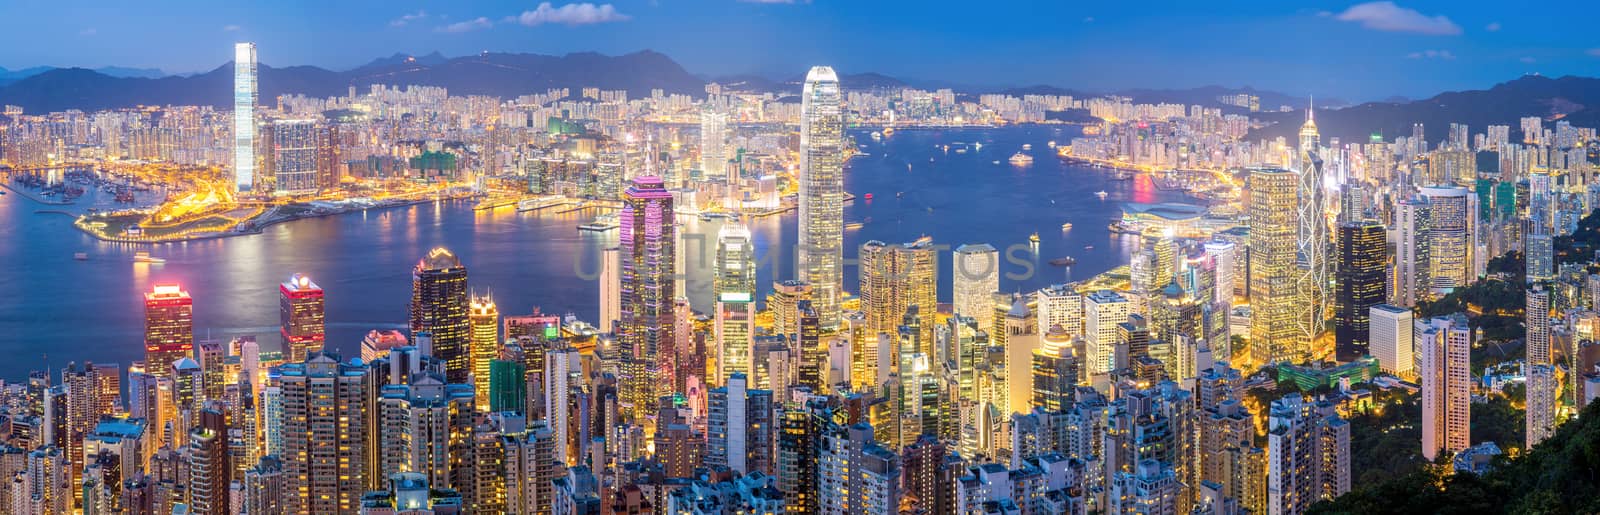 Hong Kong Skyline at Dusk Panorama by vichie81